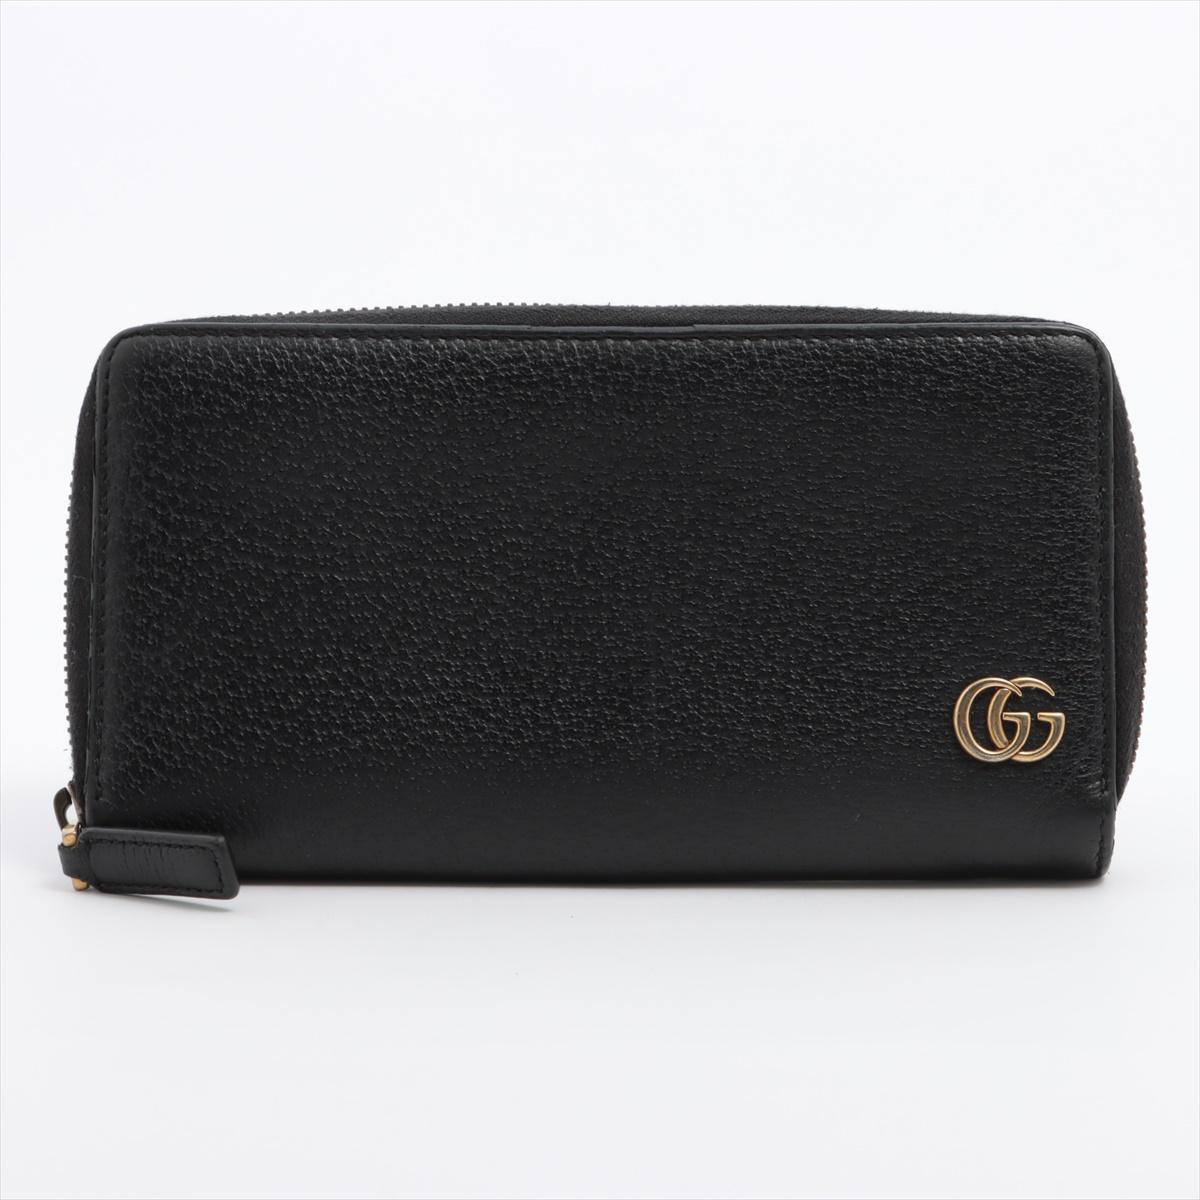 Die Gucci GG Marmont Calf Leather Zip Around Long Wallet in Schwarz ist ein atemberaubendes Beispiel für die Verschmelzung von Luxus und zeitgenössischem Design der Marke. Das geschmeidige schwarze Kalbsleder verleiht nicht nur einen Hauch von